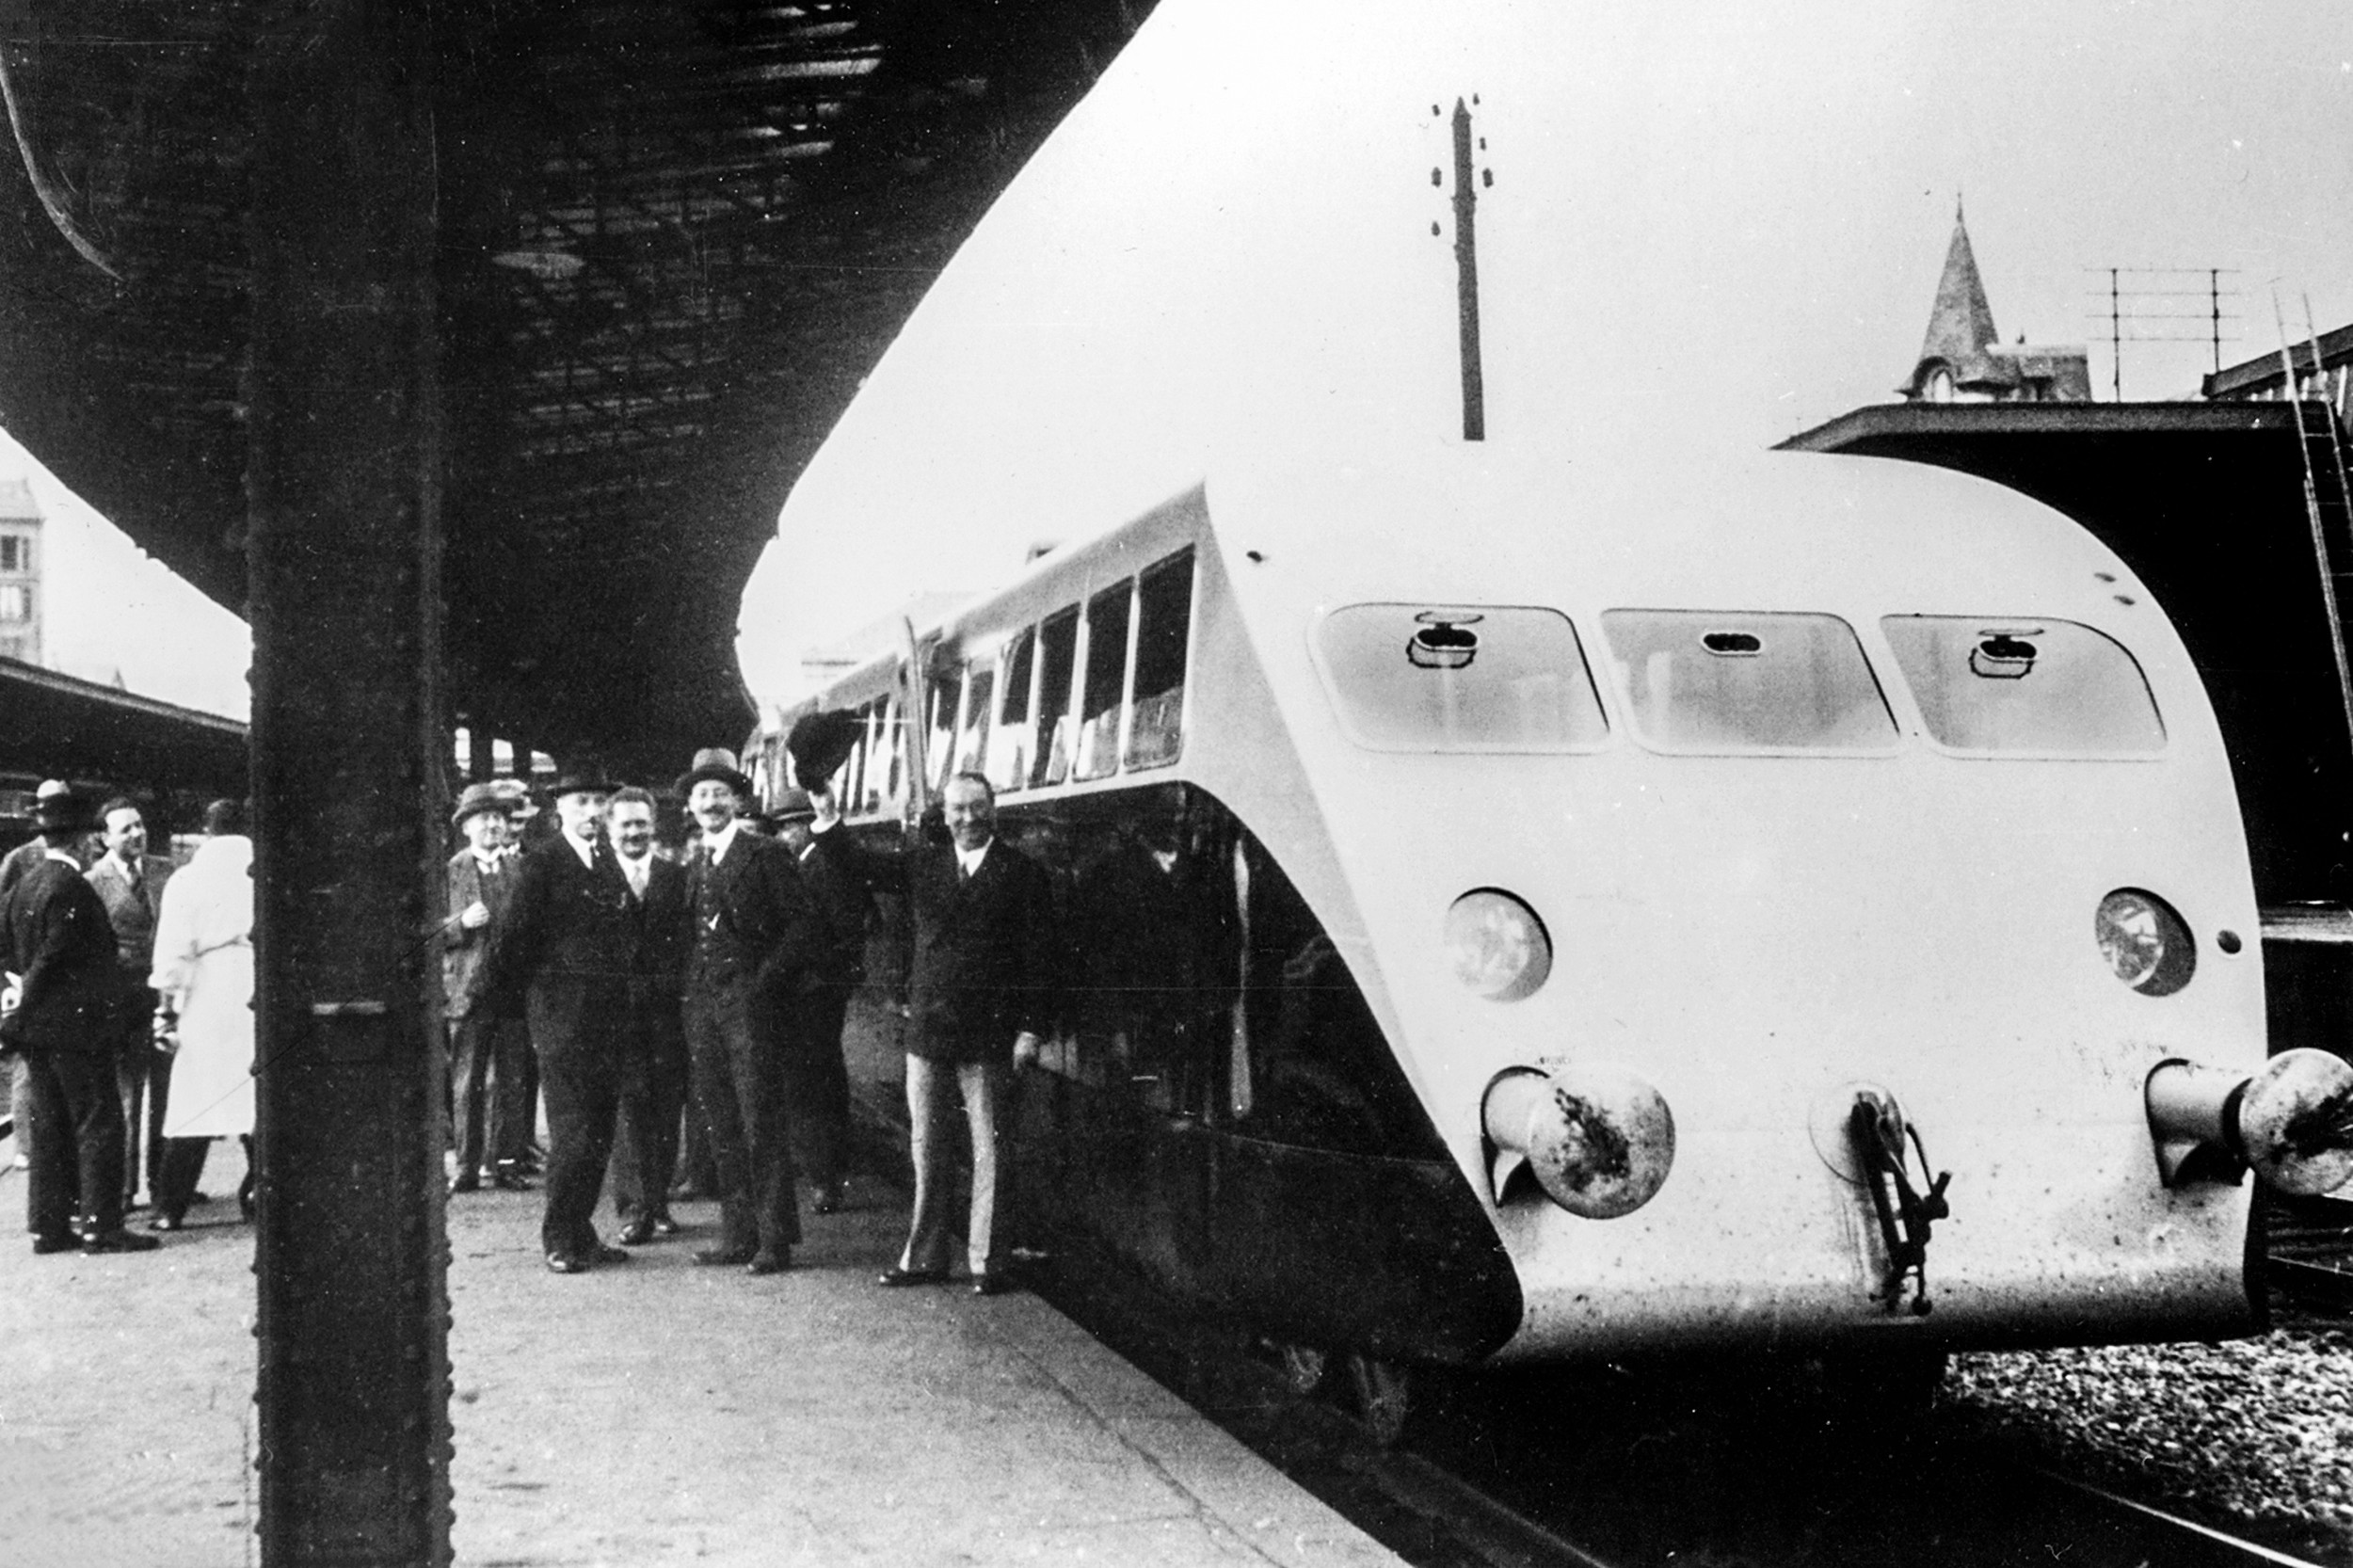 이런 상황은 자동차와 버스의 등장으로 더욱 악화되었고&#44; 프랑스 철도 여행은 현대화가 시급한 상황이었다. 에토레 부가티의 선구적인 &#39;Royale&#39; 기차는 이런 상황을 극복하고 프랑스 철도를 새로운 시대로 이끌었다.